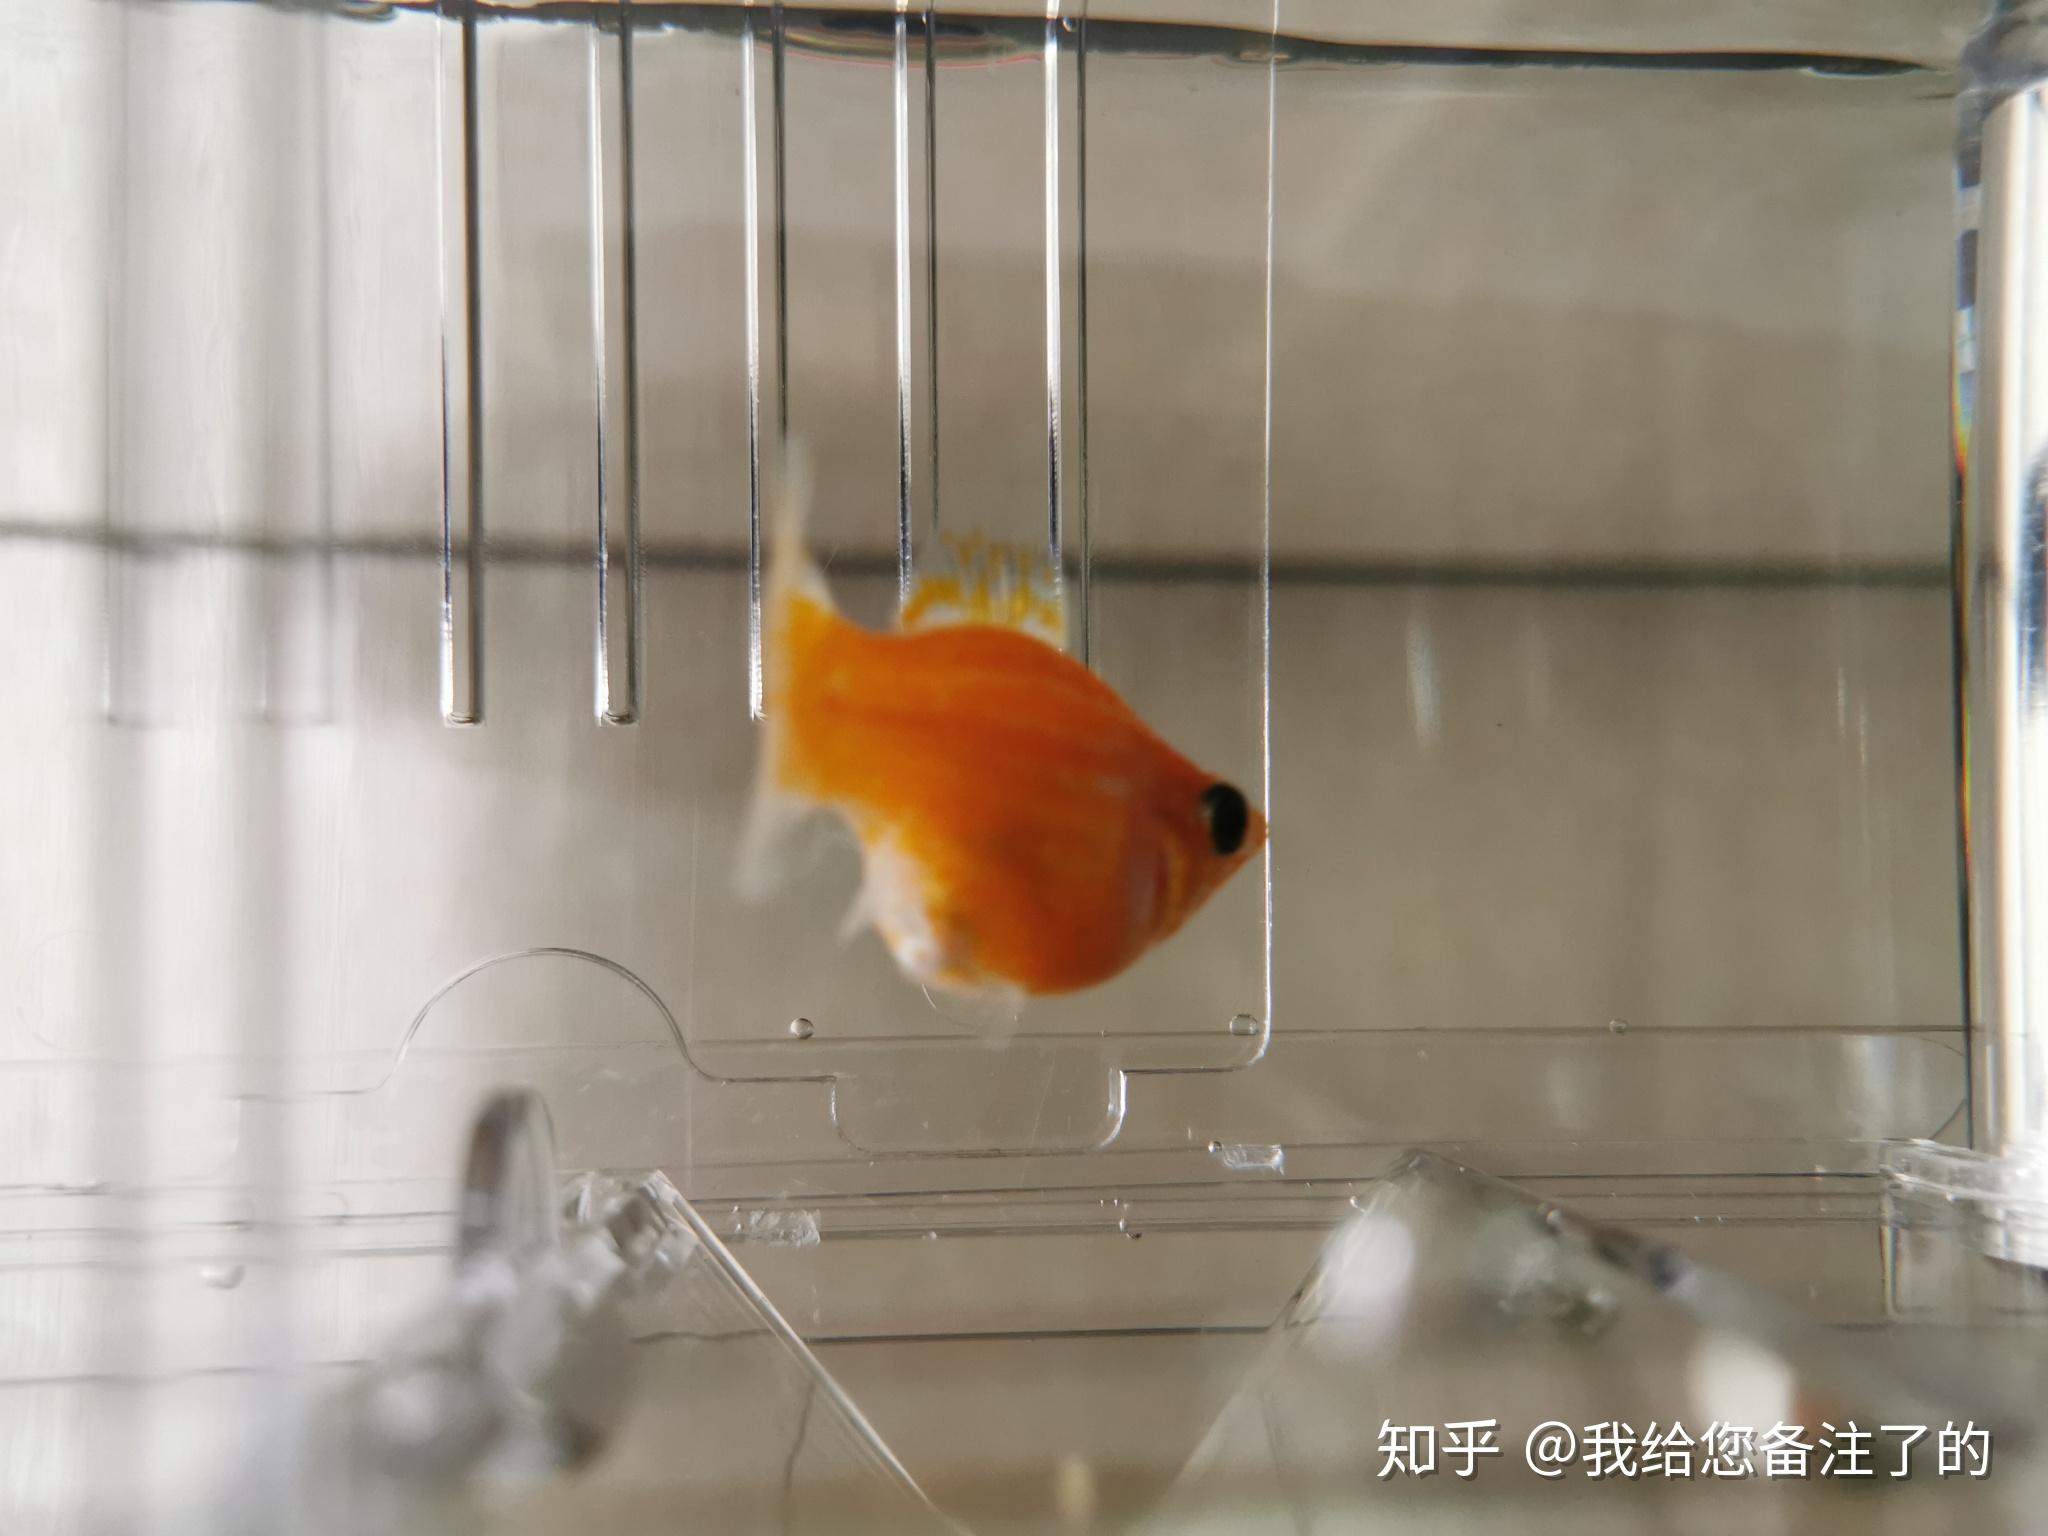 红皮球玛丽-观赏鱼-图片